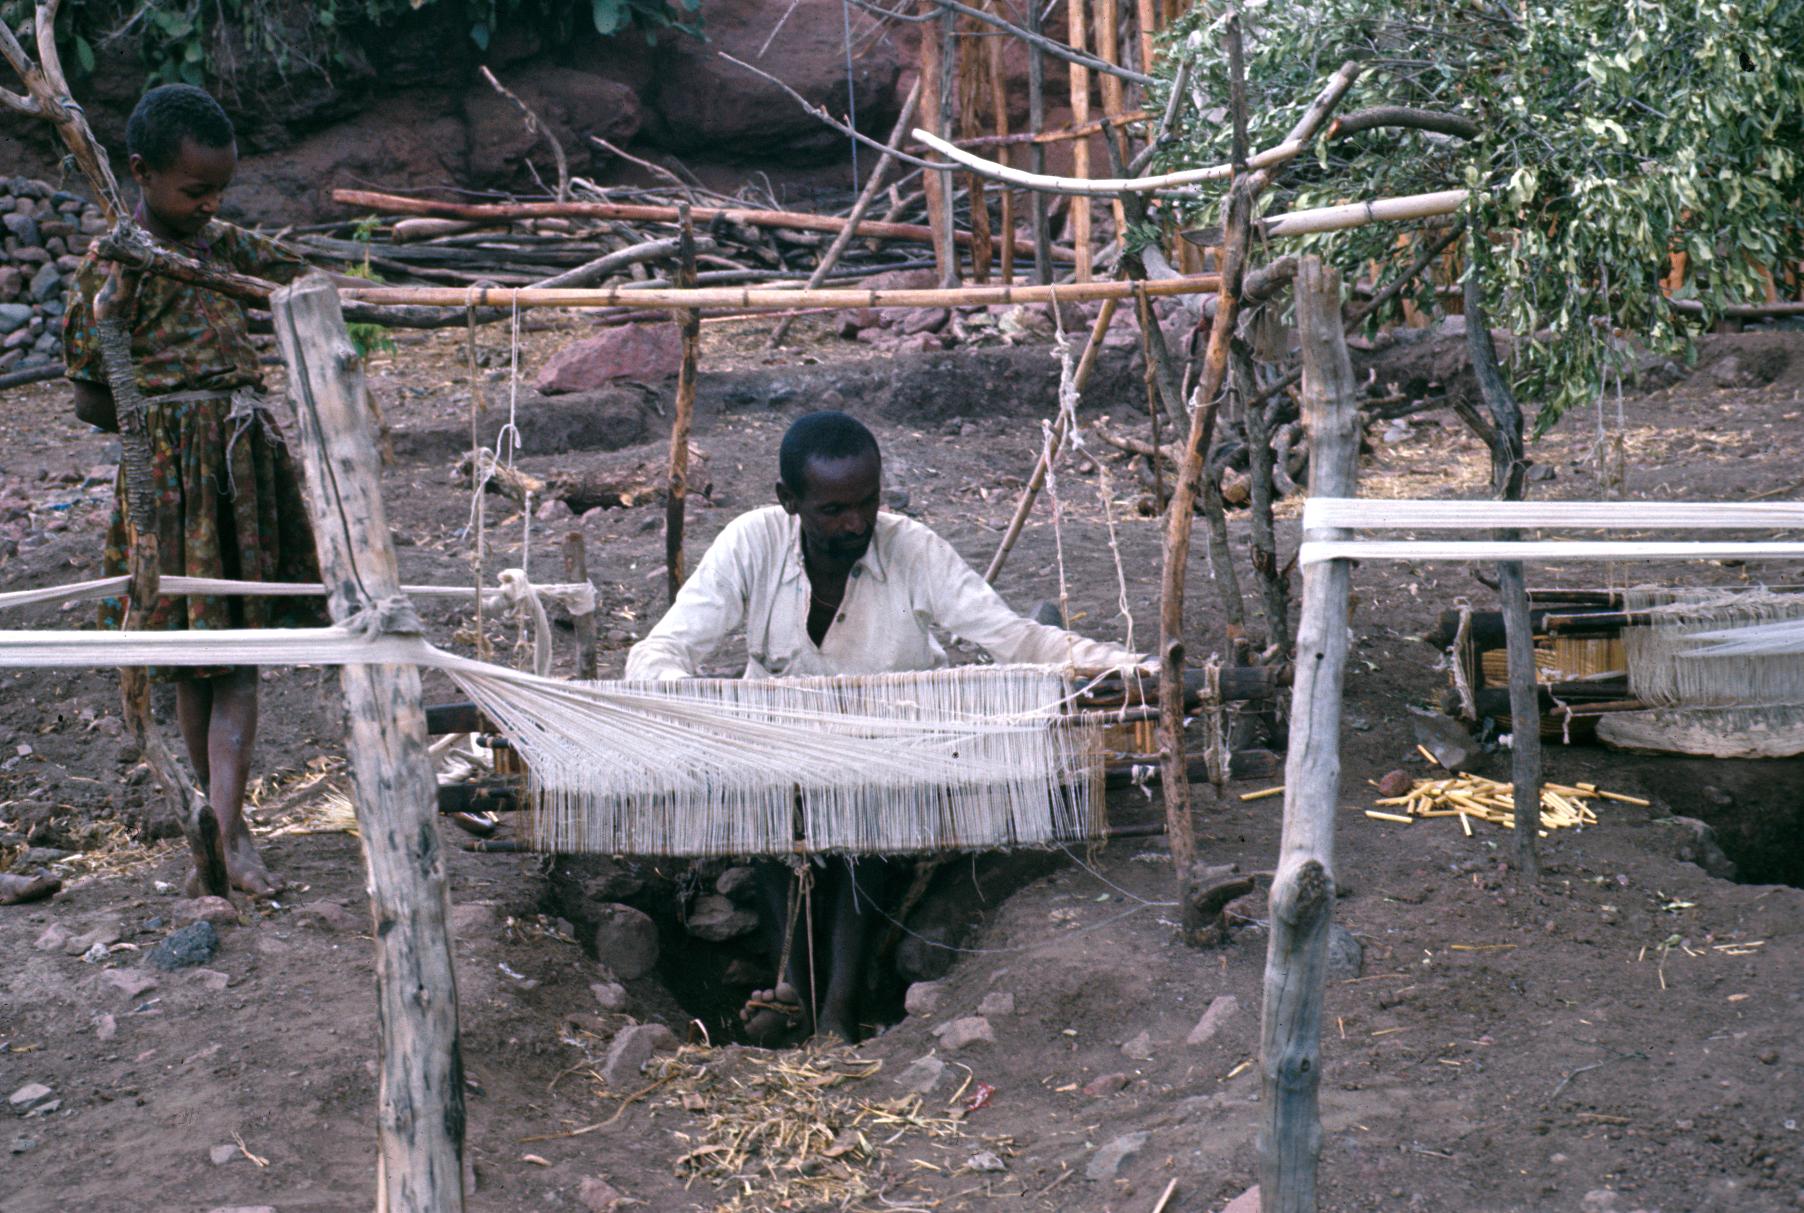 Man Weaving at Pit Loom